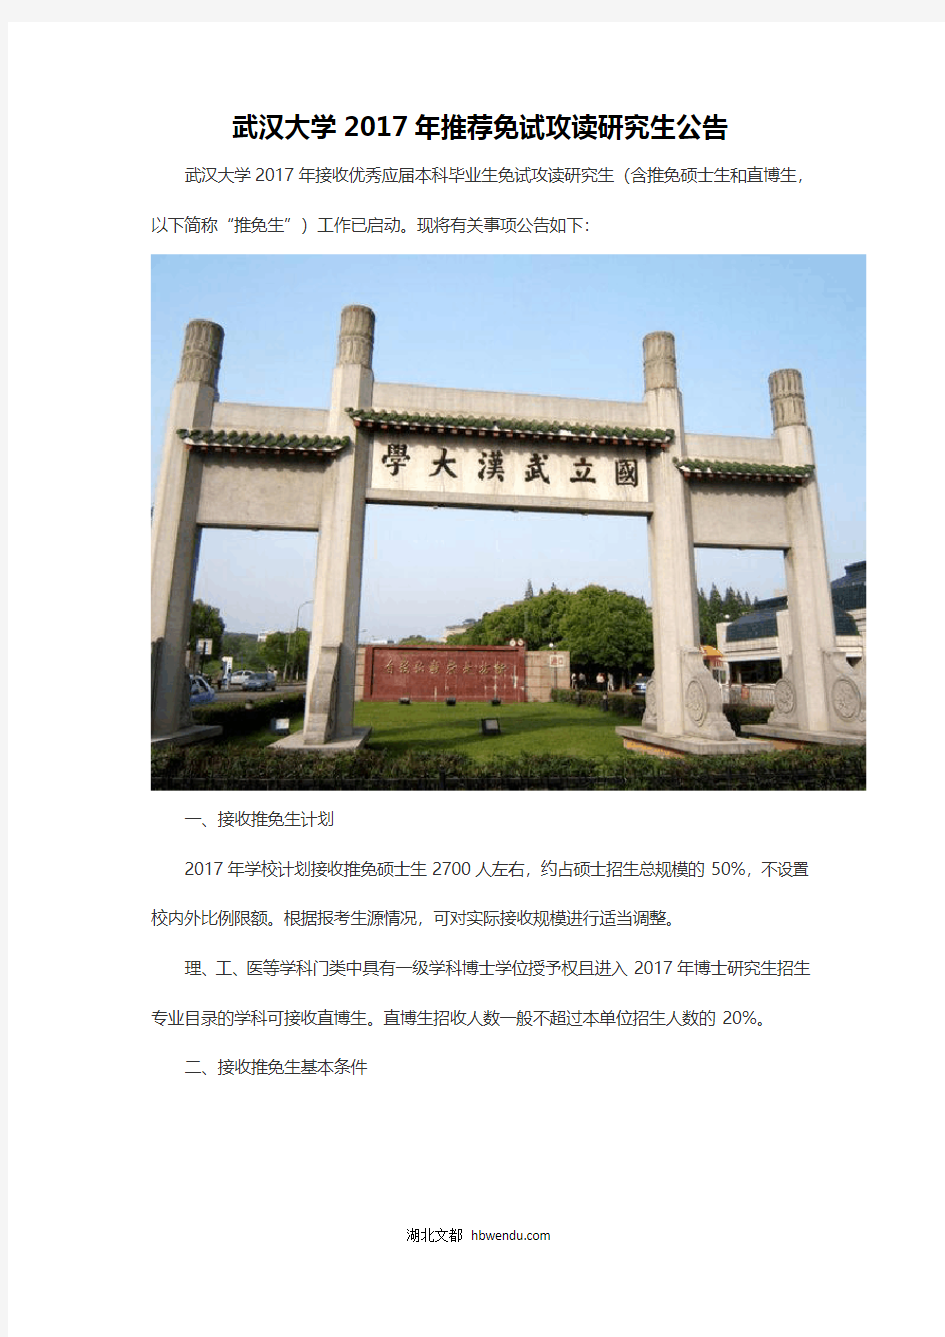 武汉大学2017年推荐免试攻读研究生公告